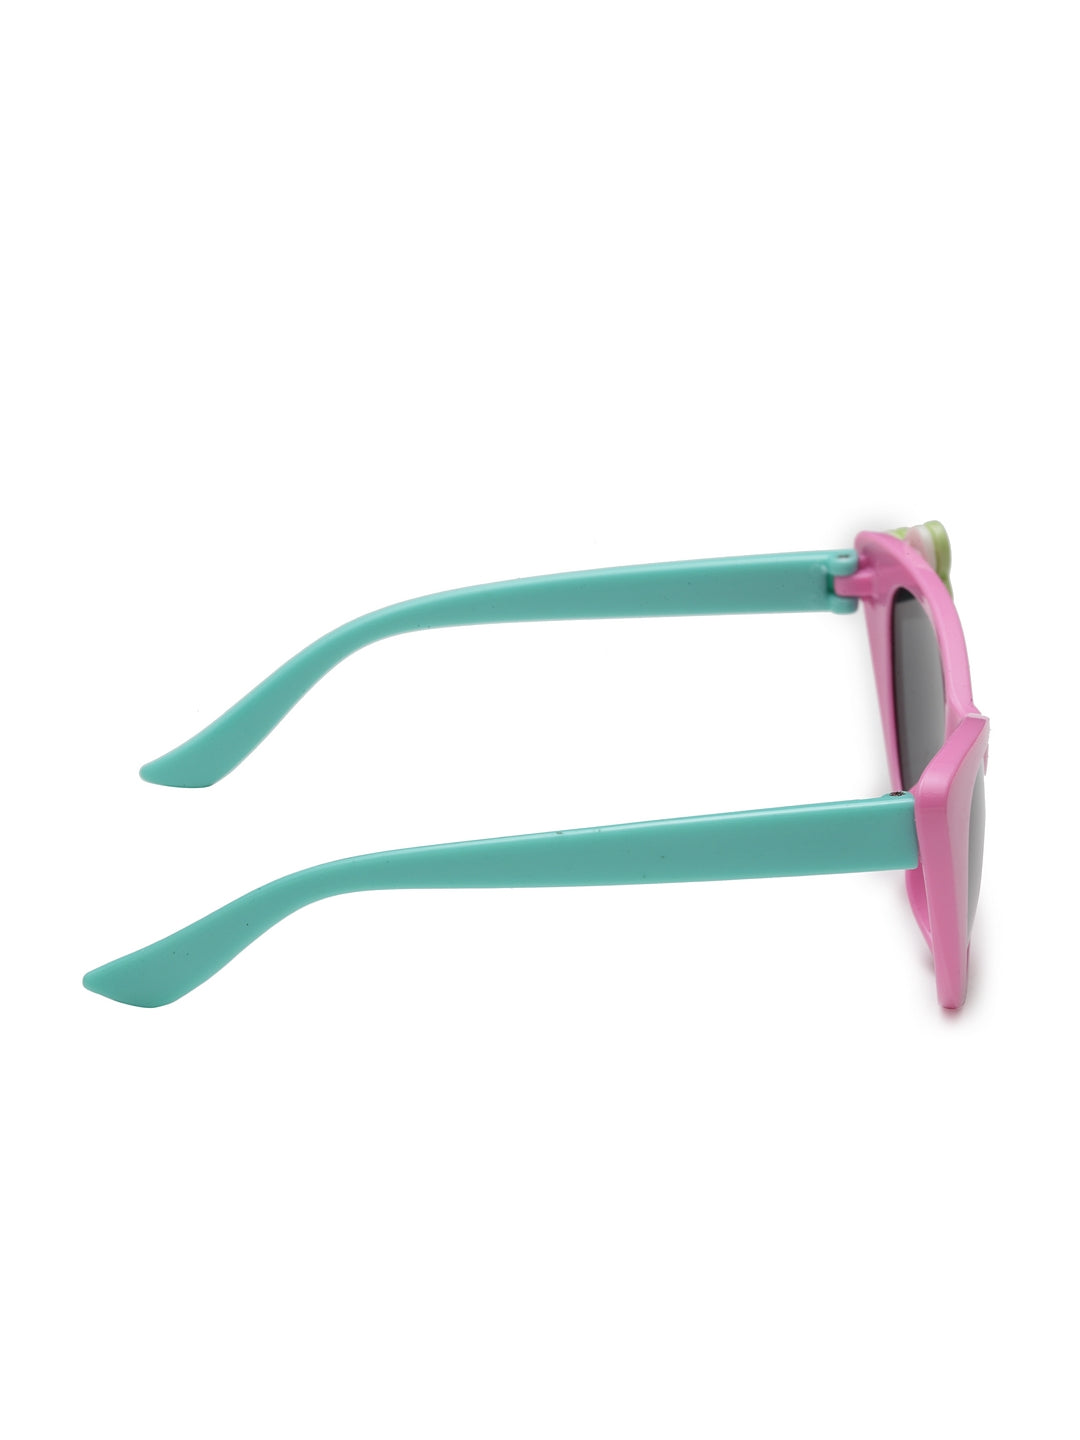 Stol'n  Sunglasses For Kids ( UV Protected) Green